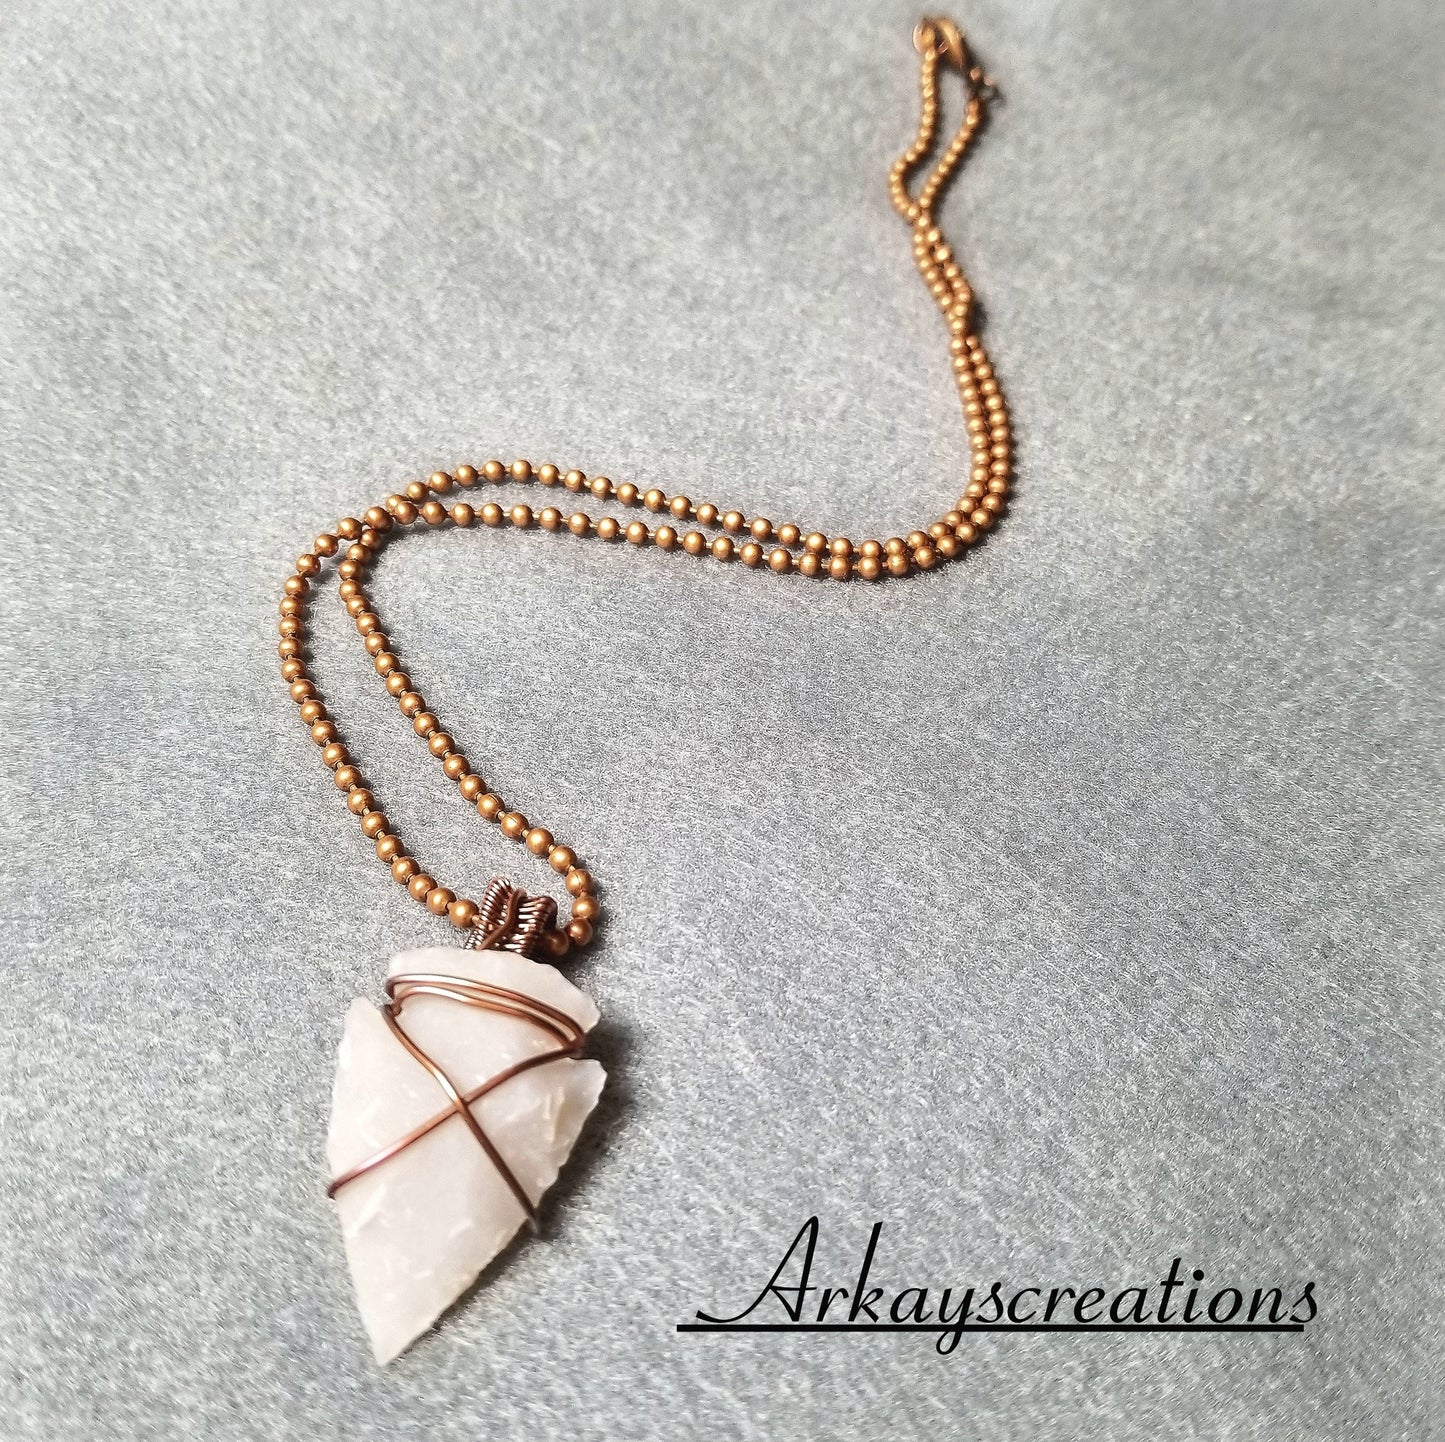 Stone Arrowhead Necklace, Wire Wrapped Jewelry